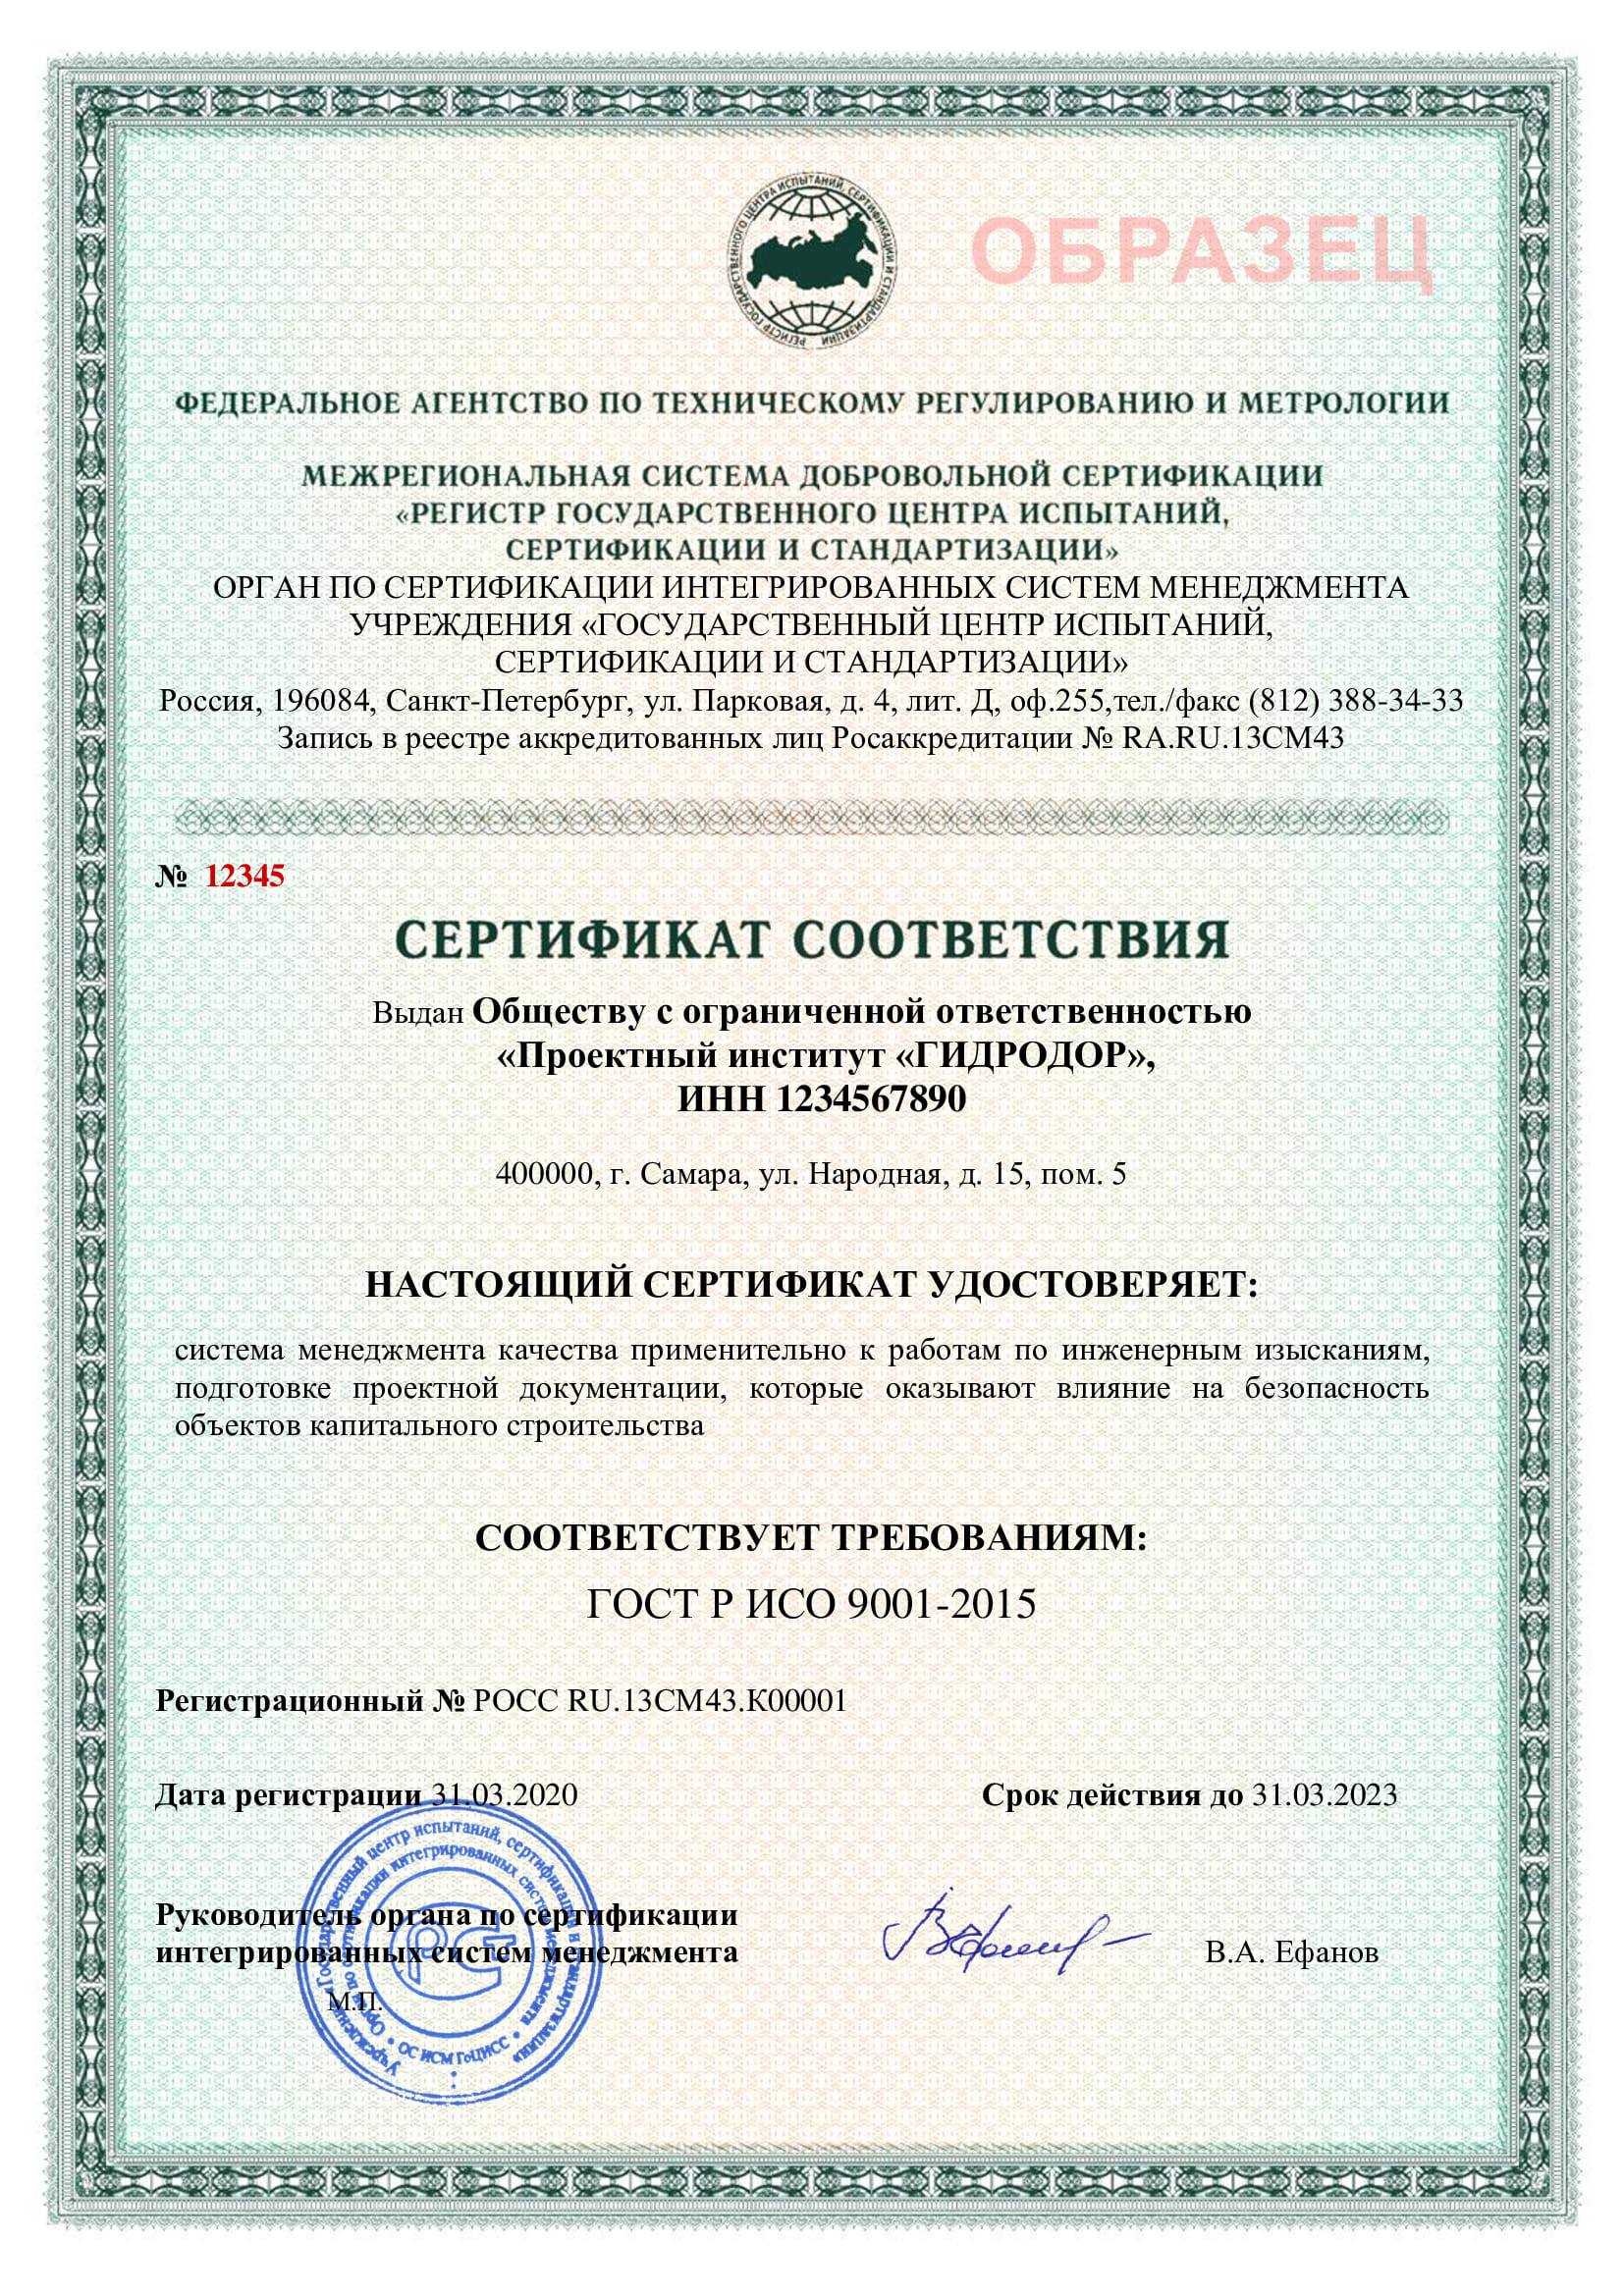 Копии сертификатов систем менеджмента качества в соответствии с требованиями стандартов iso 9001